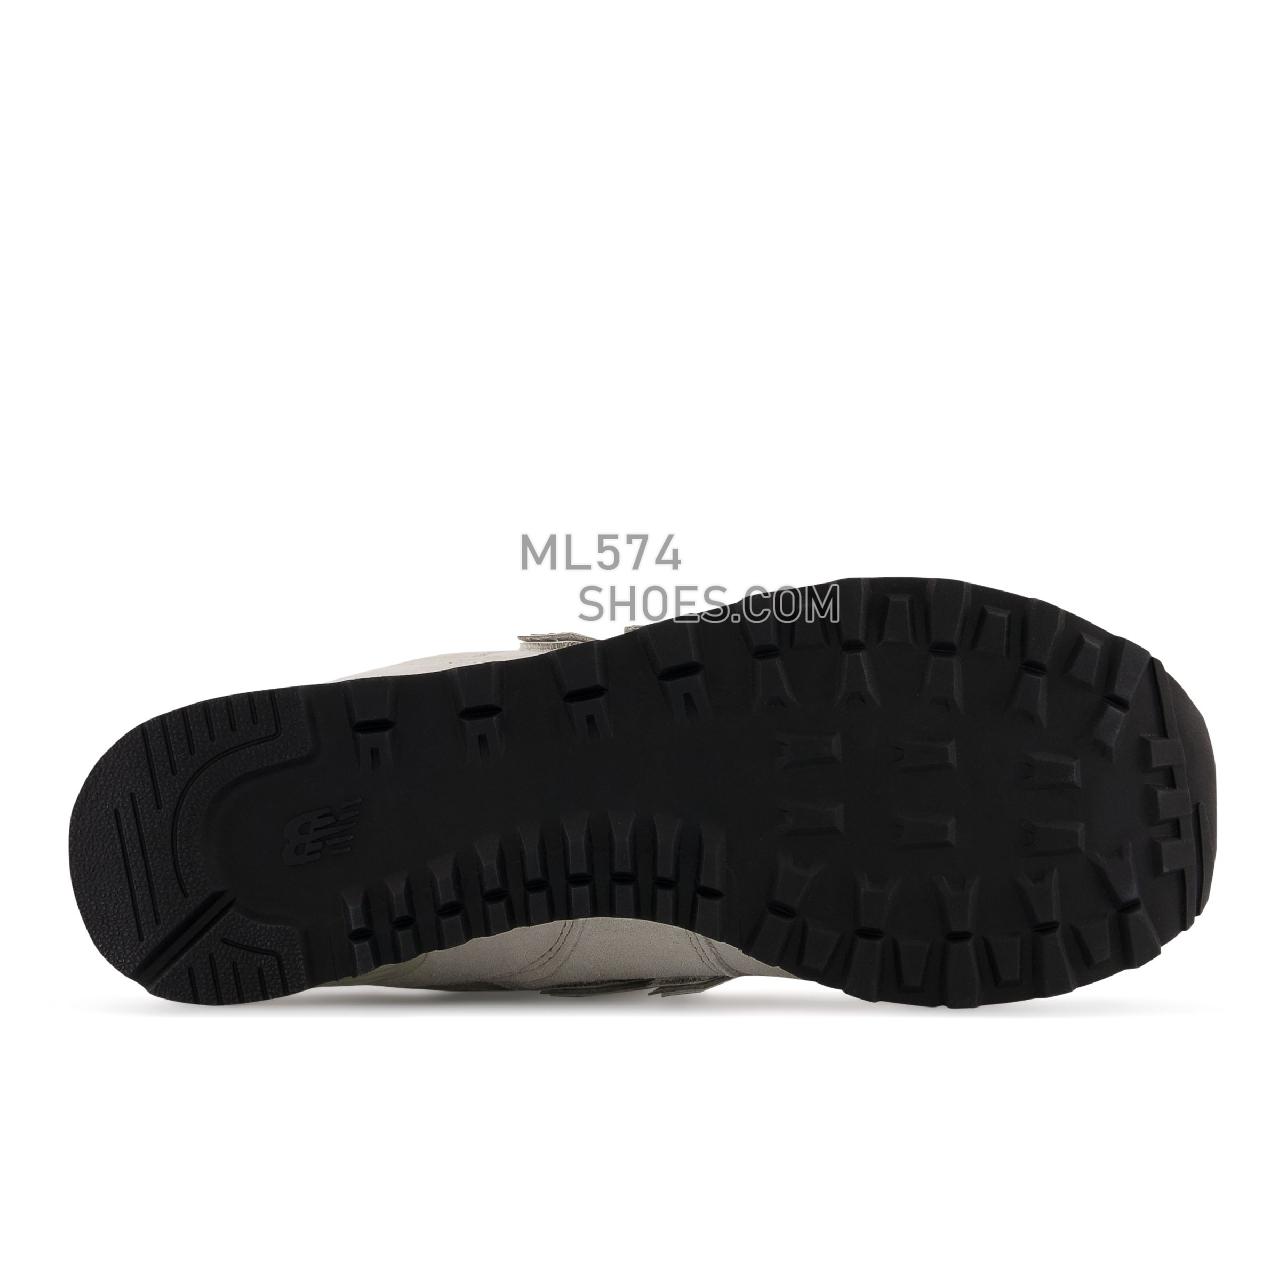 New Balance 574v2 - Men's Classic Sneakers - Off White - ML574CS2